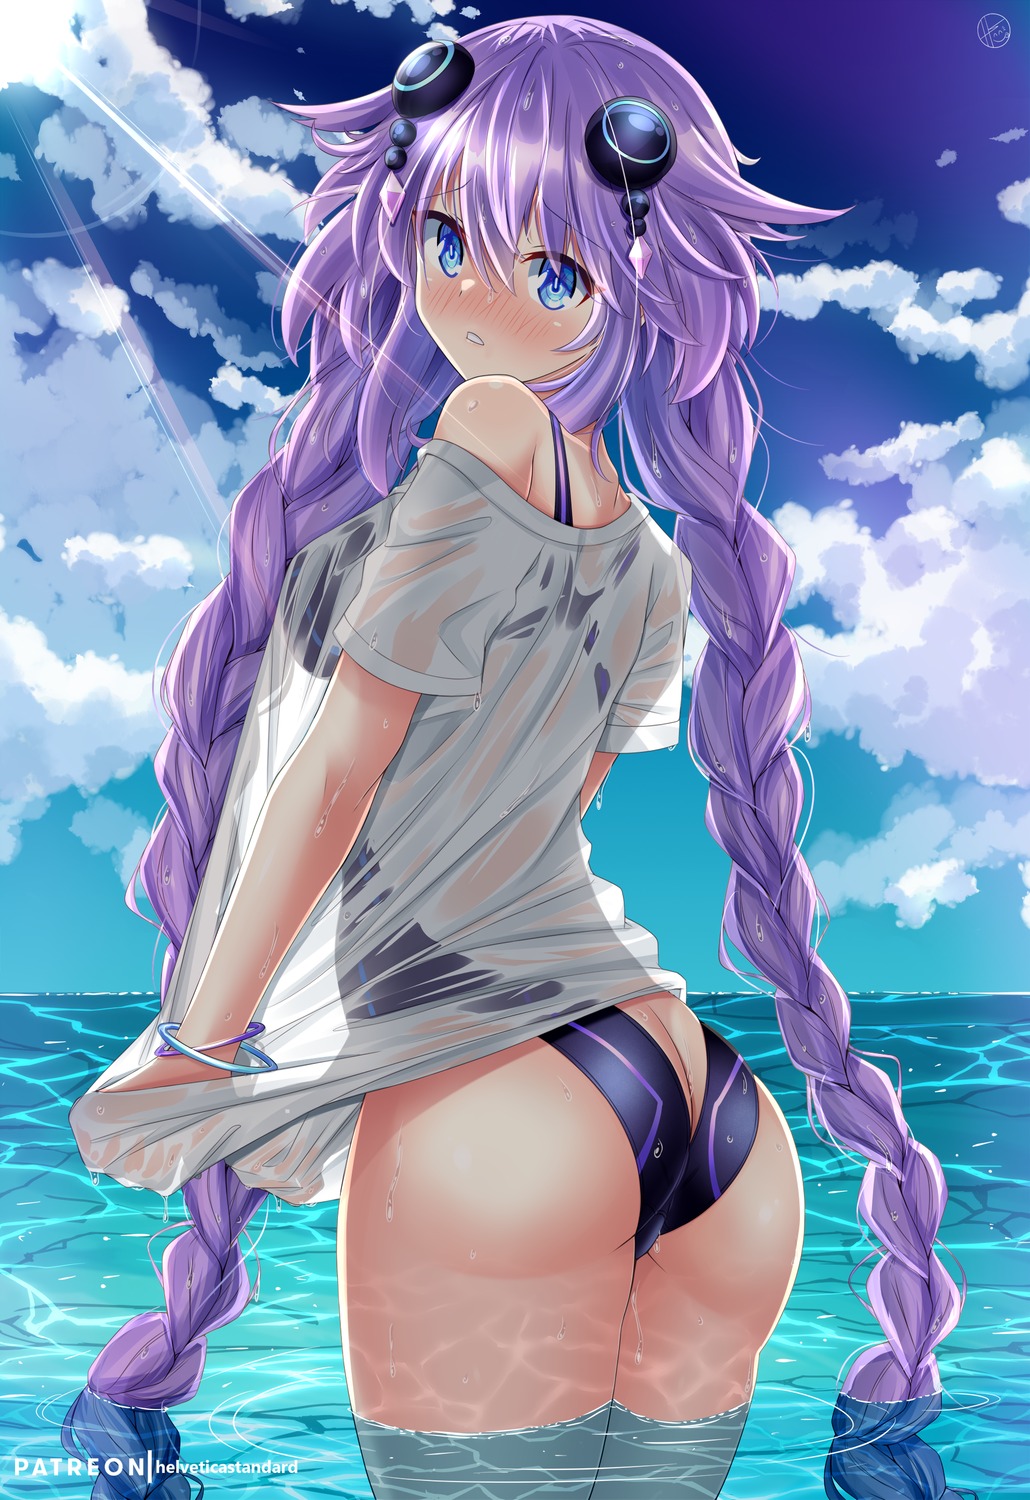 ass choujigen_game_neptune helvetica_5tandard purple_heart see_through swimsuits wet wet_clothes